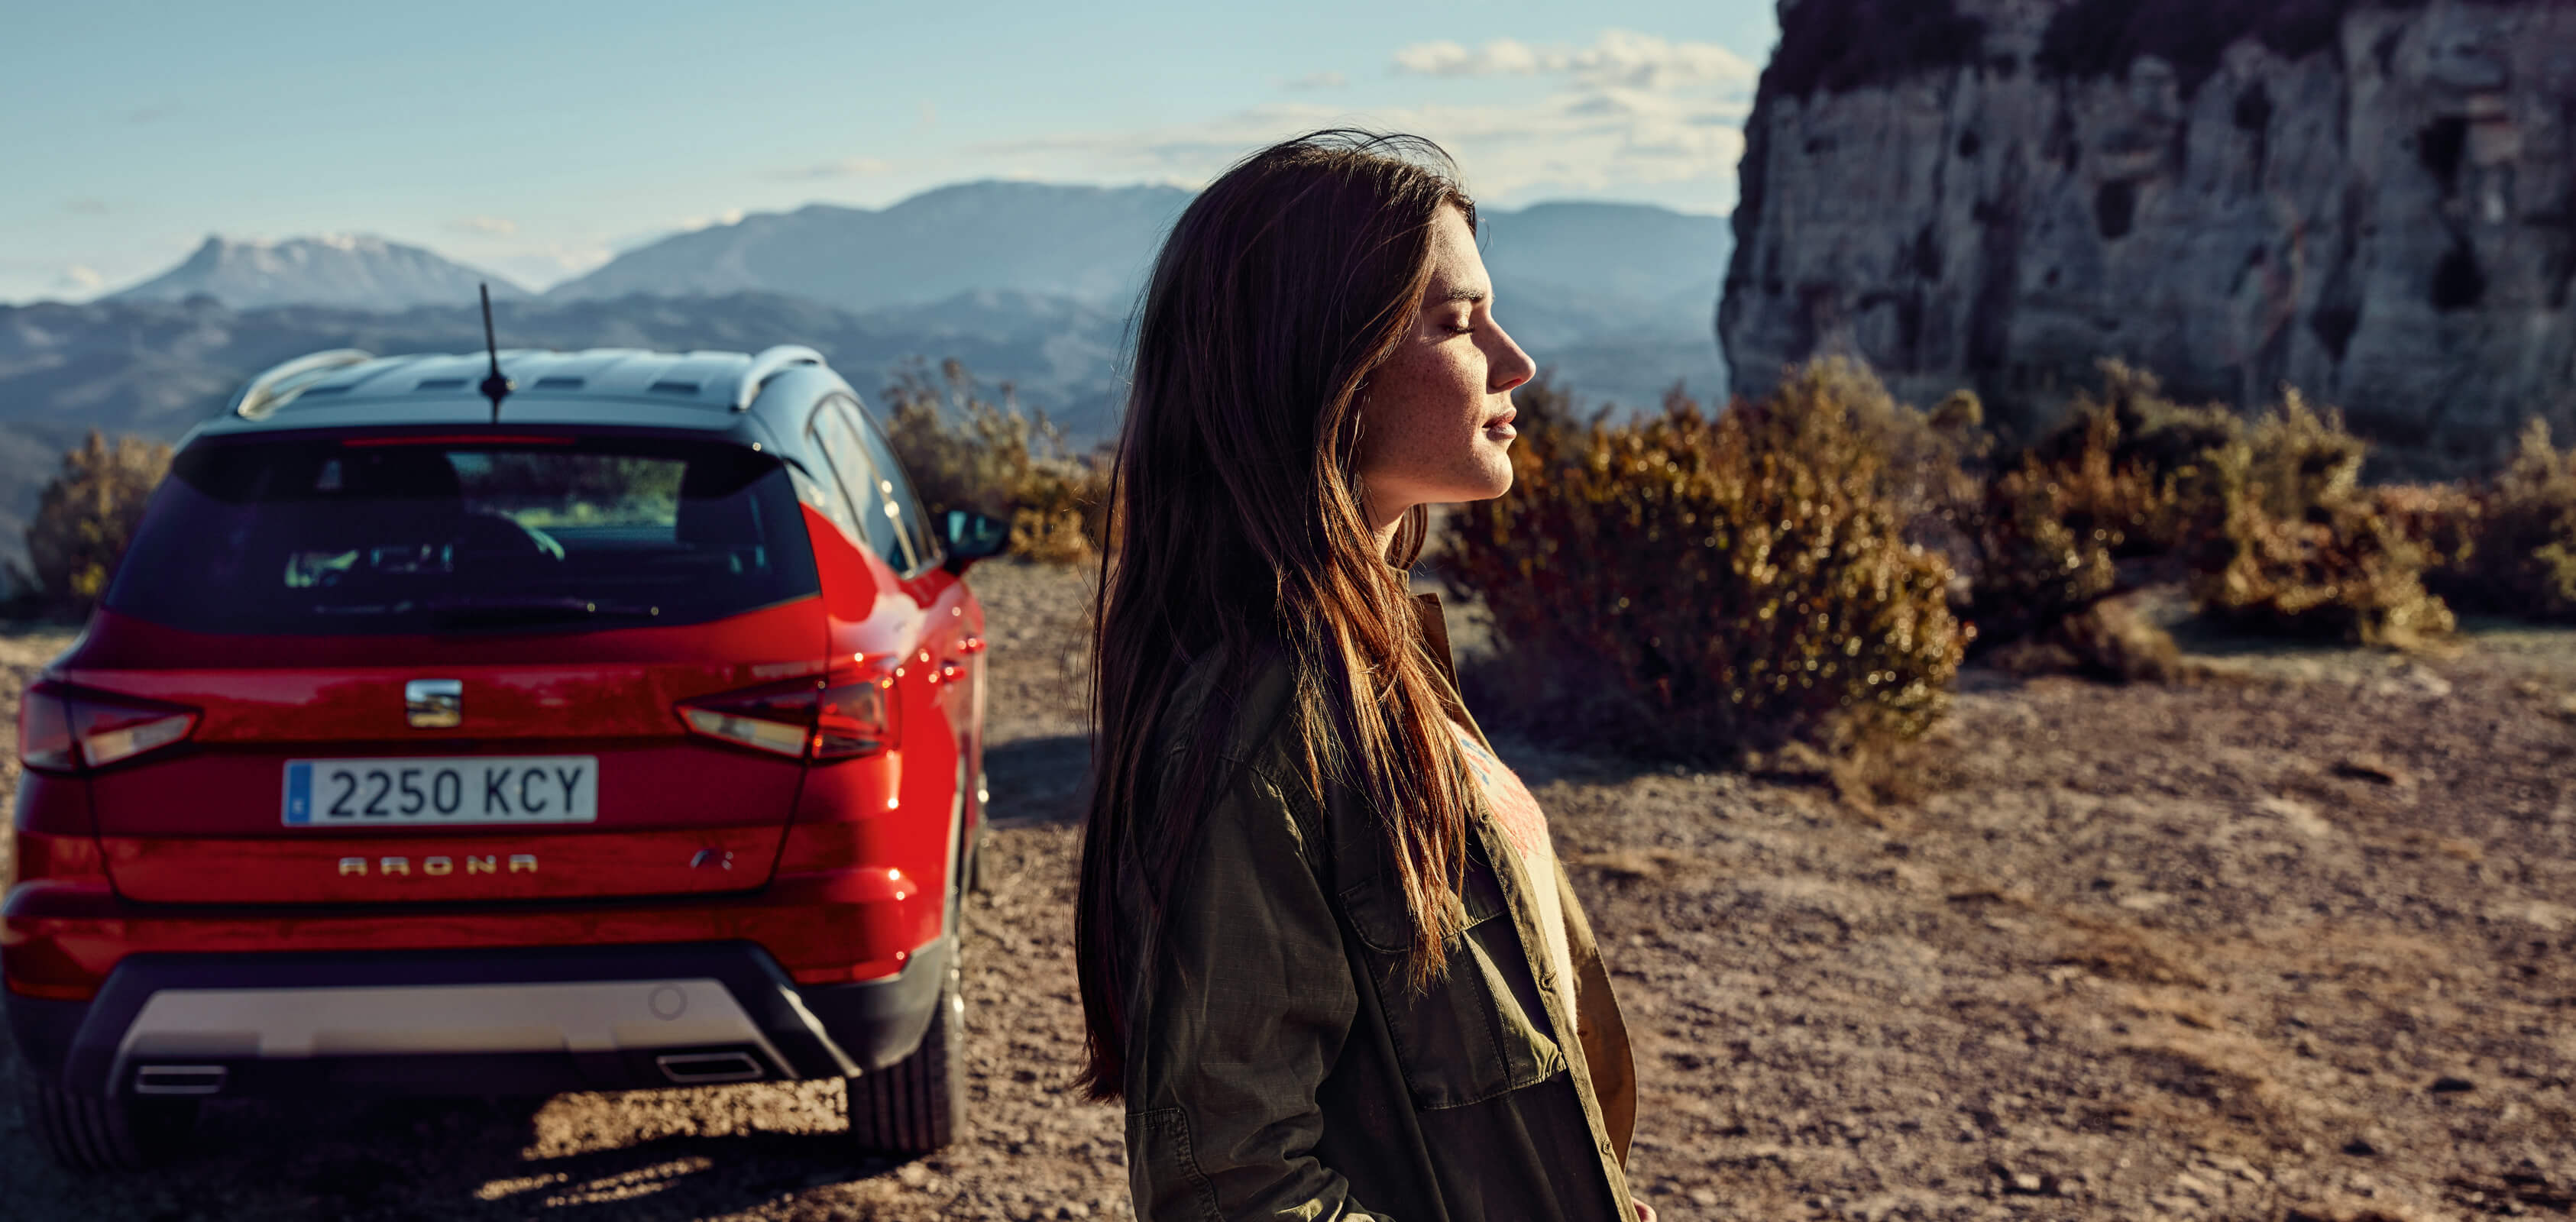 SEAT Neuer Service – Heckansicht des SEAT Arona Crossover SUV in einer Wüste parkiert mit Profilansicht einer Frau